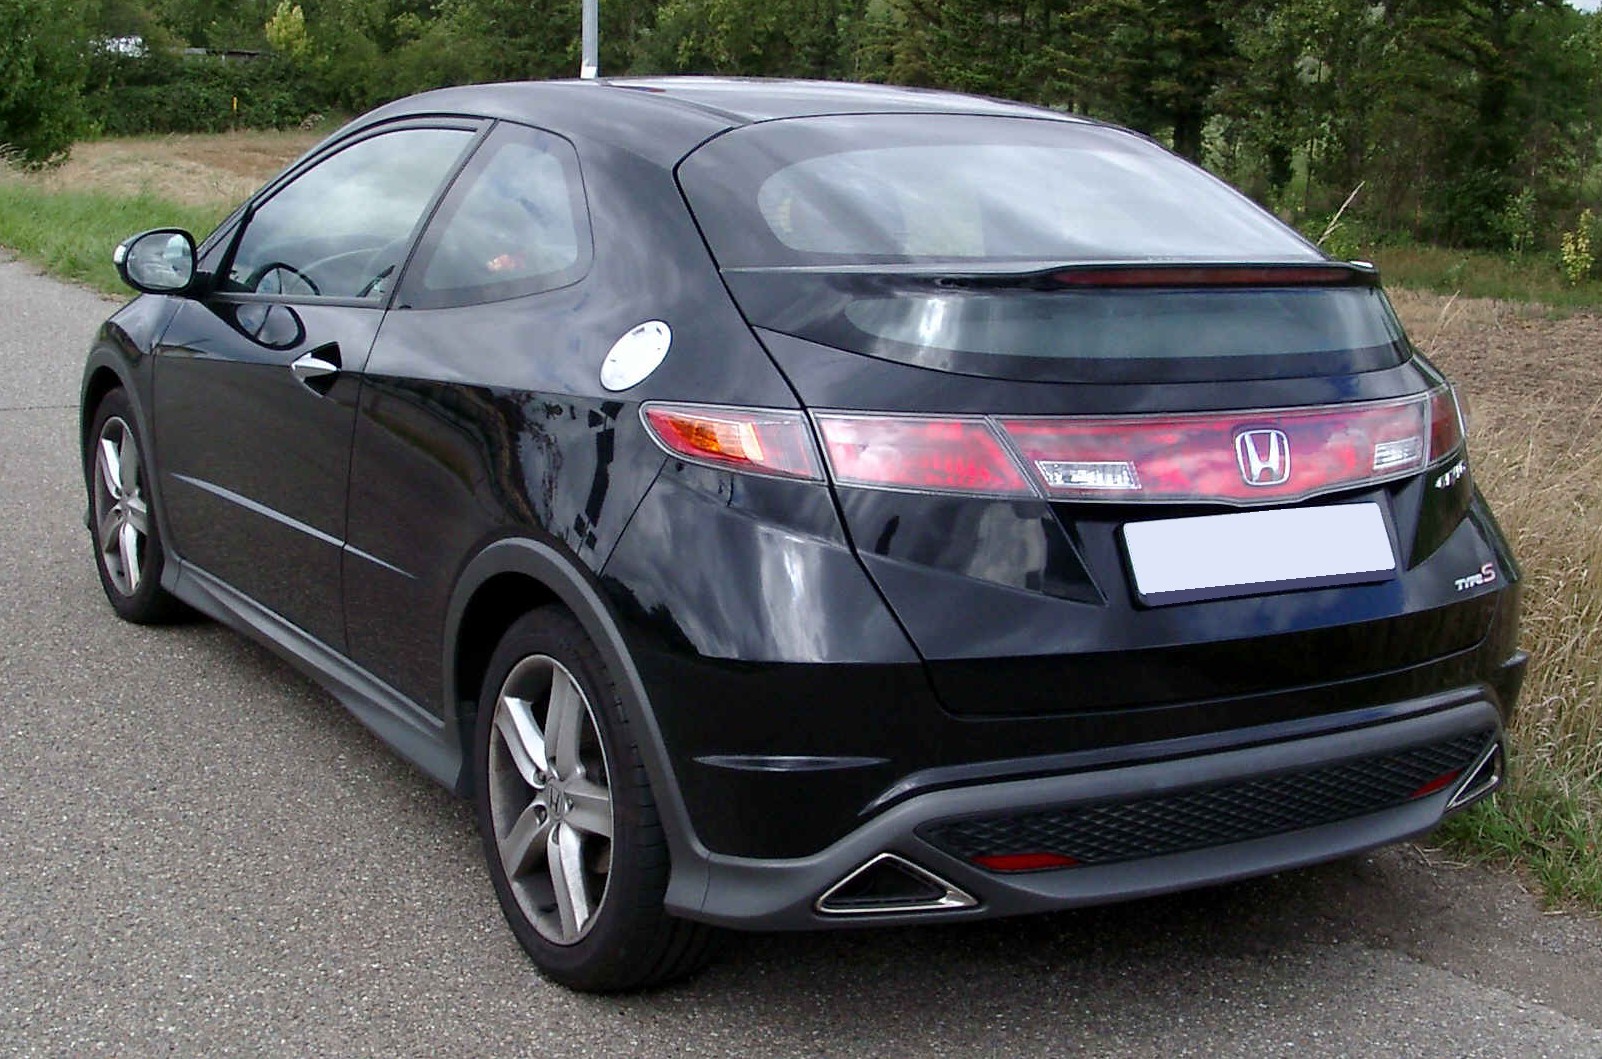 Honda_Civic_rear_20080820.jpg